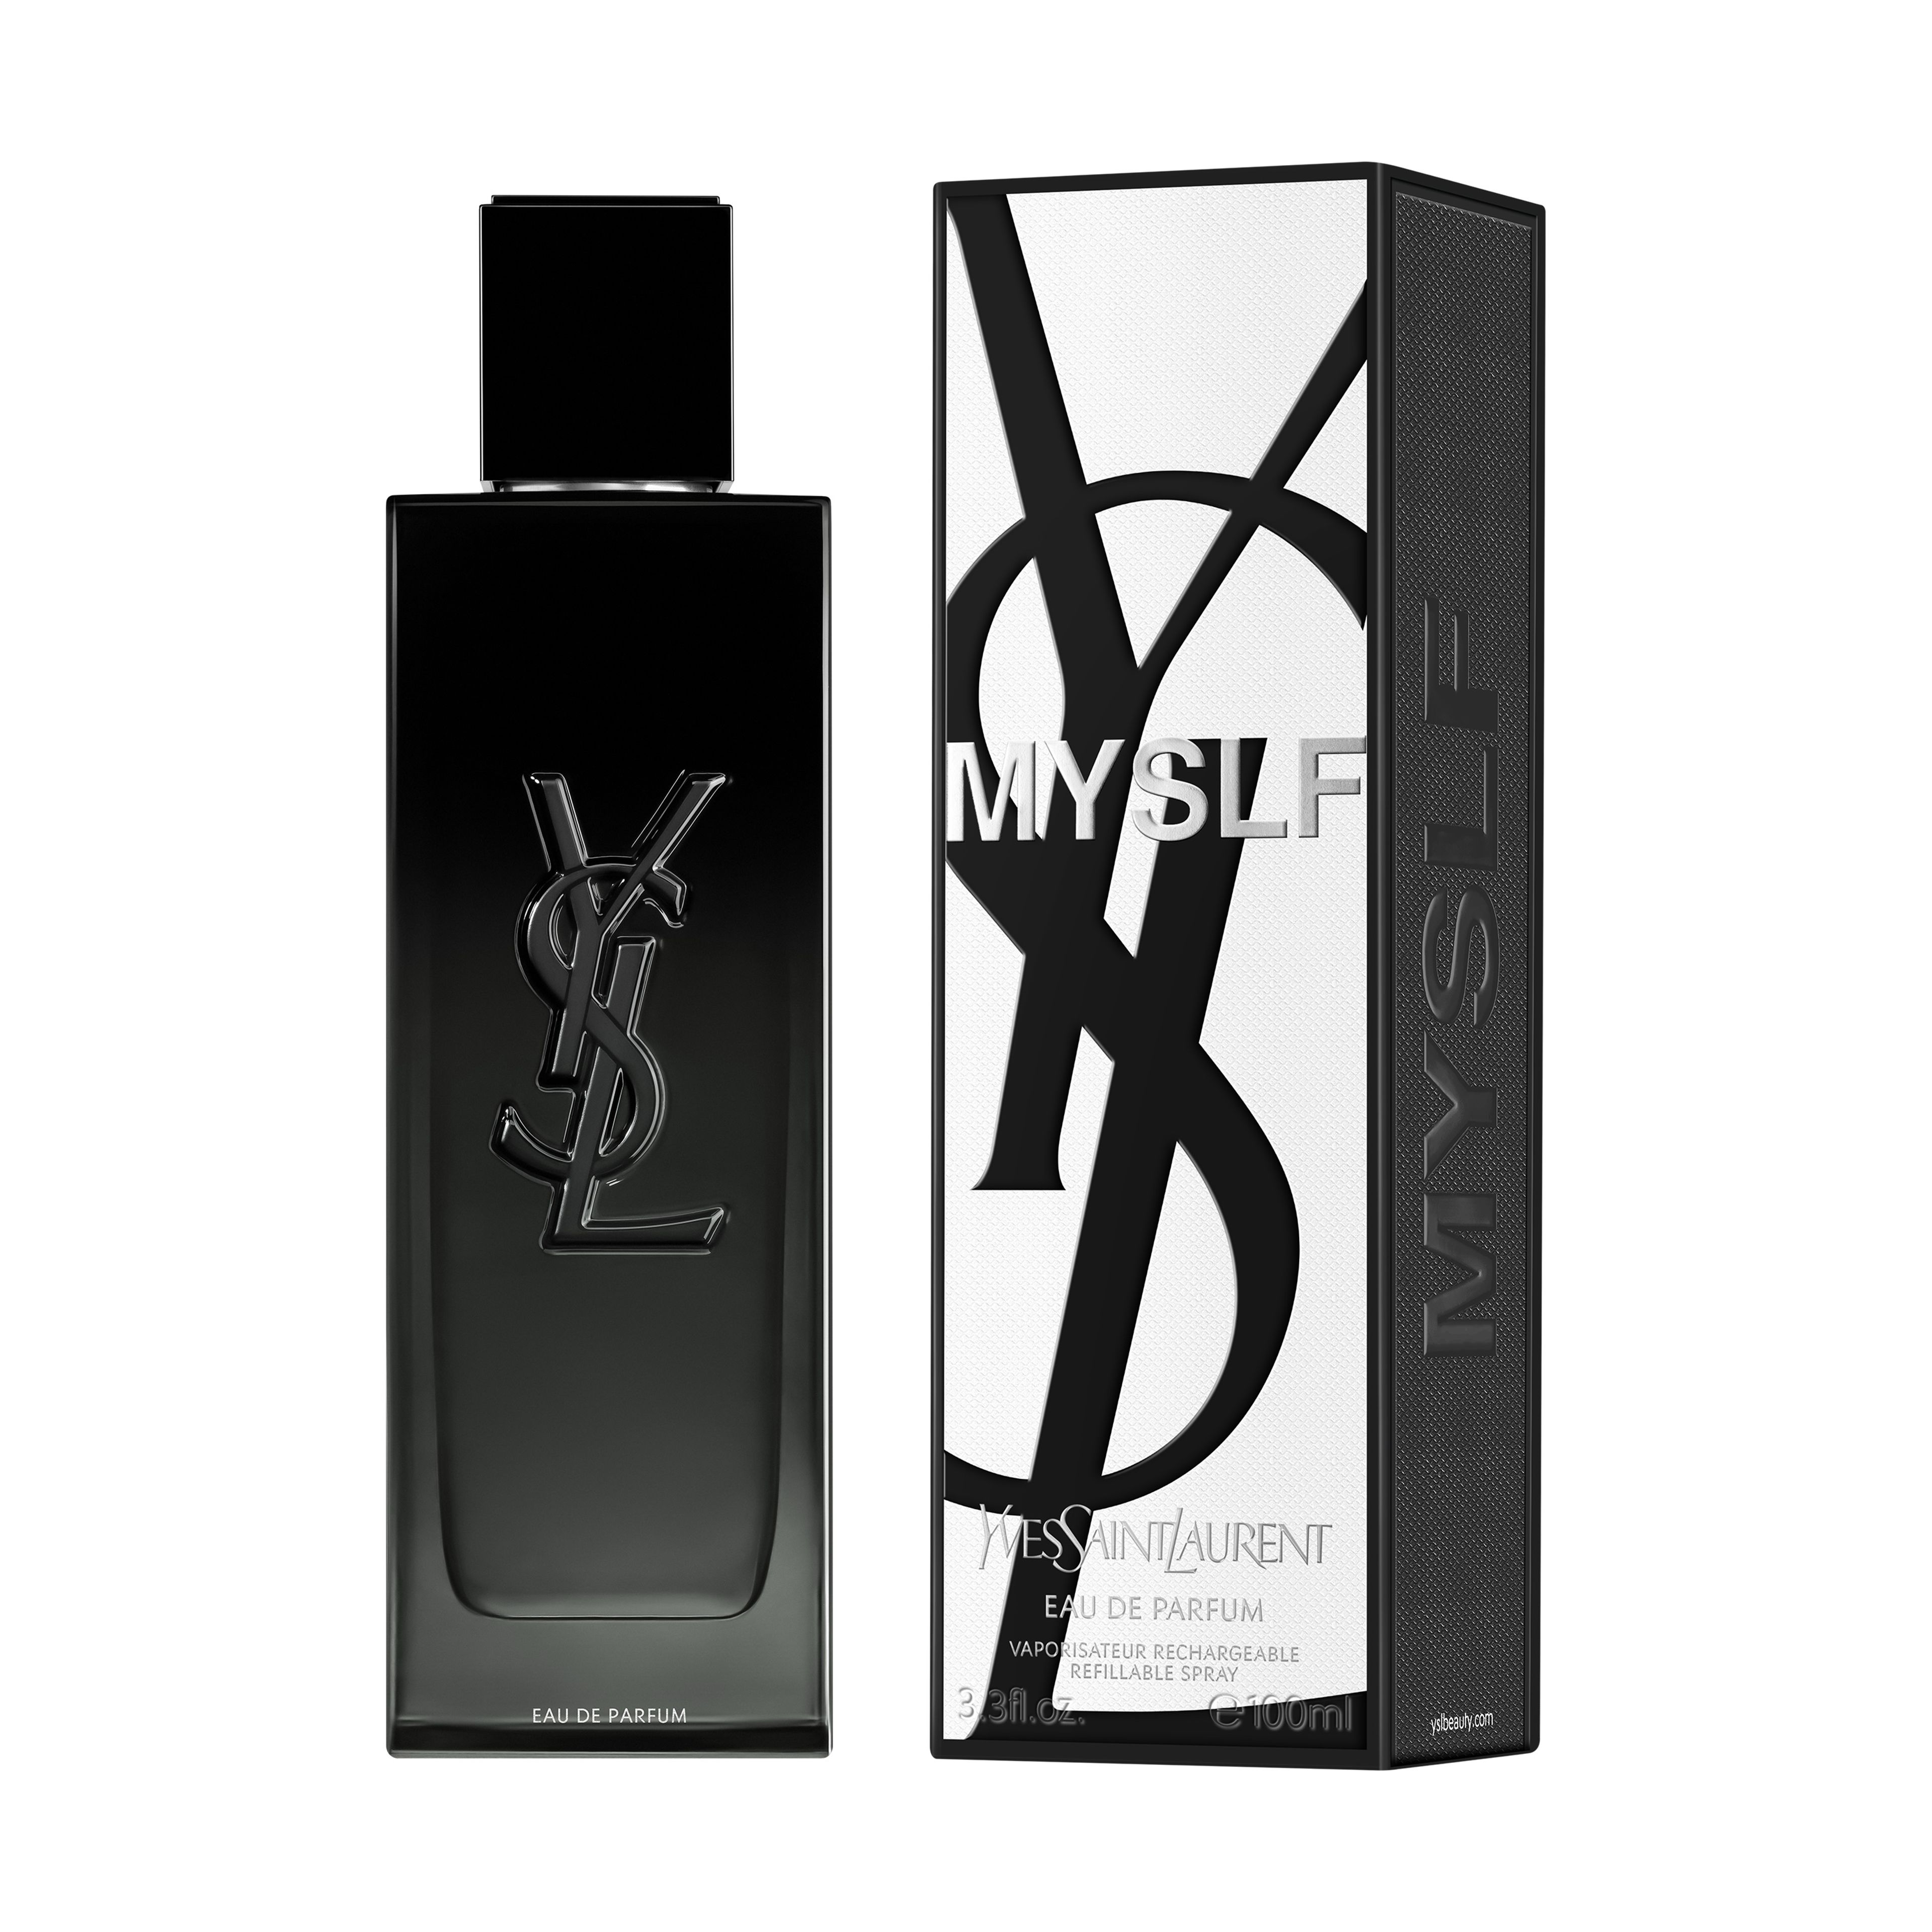 Yves Saint Laurent Myslf Eau De Parfum 2